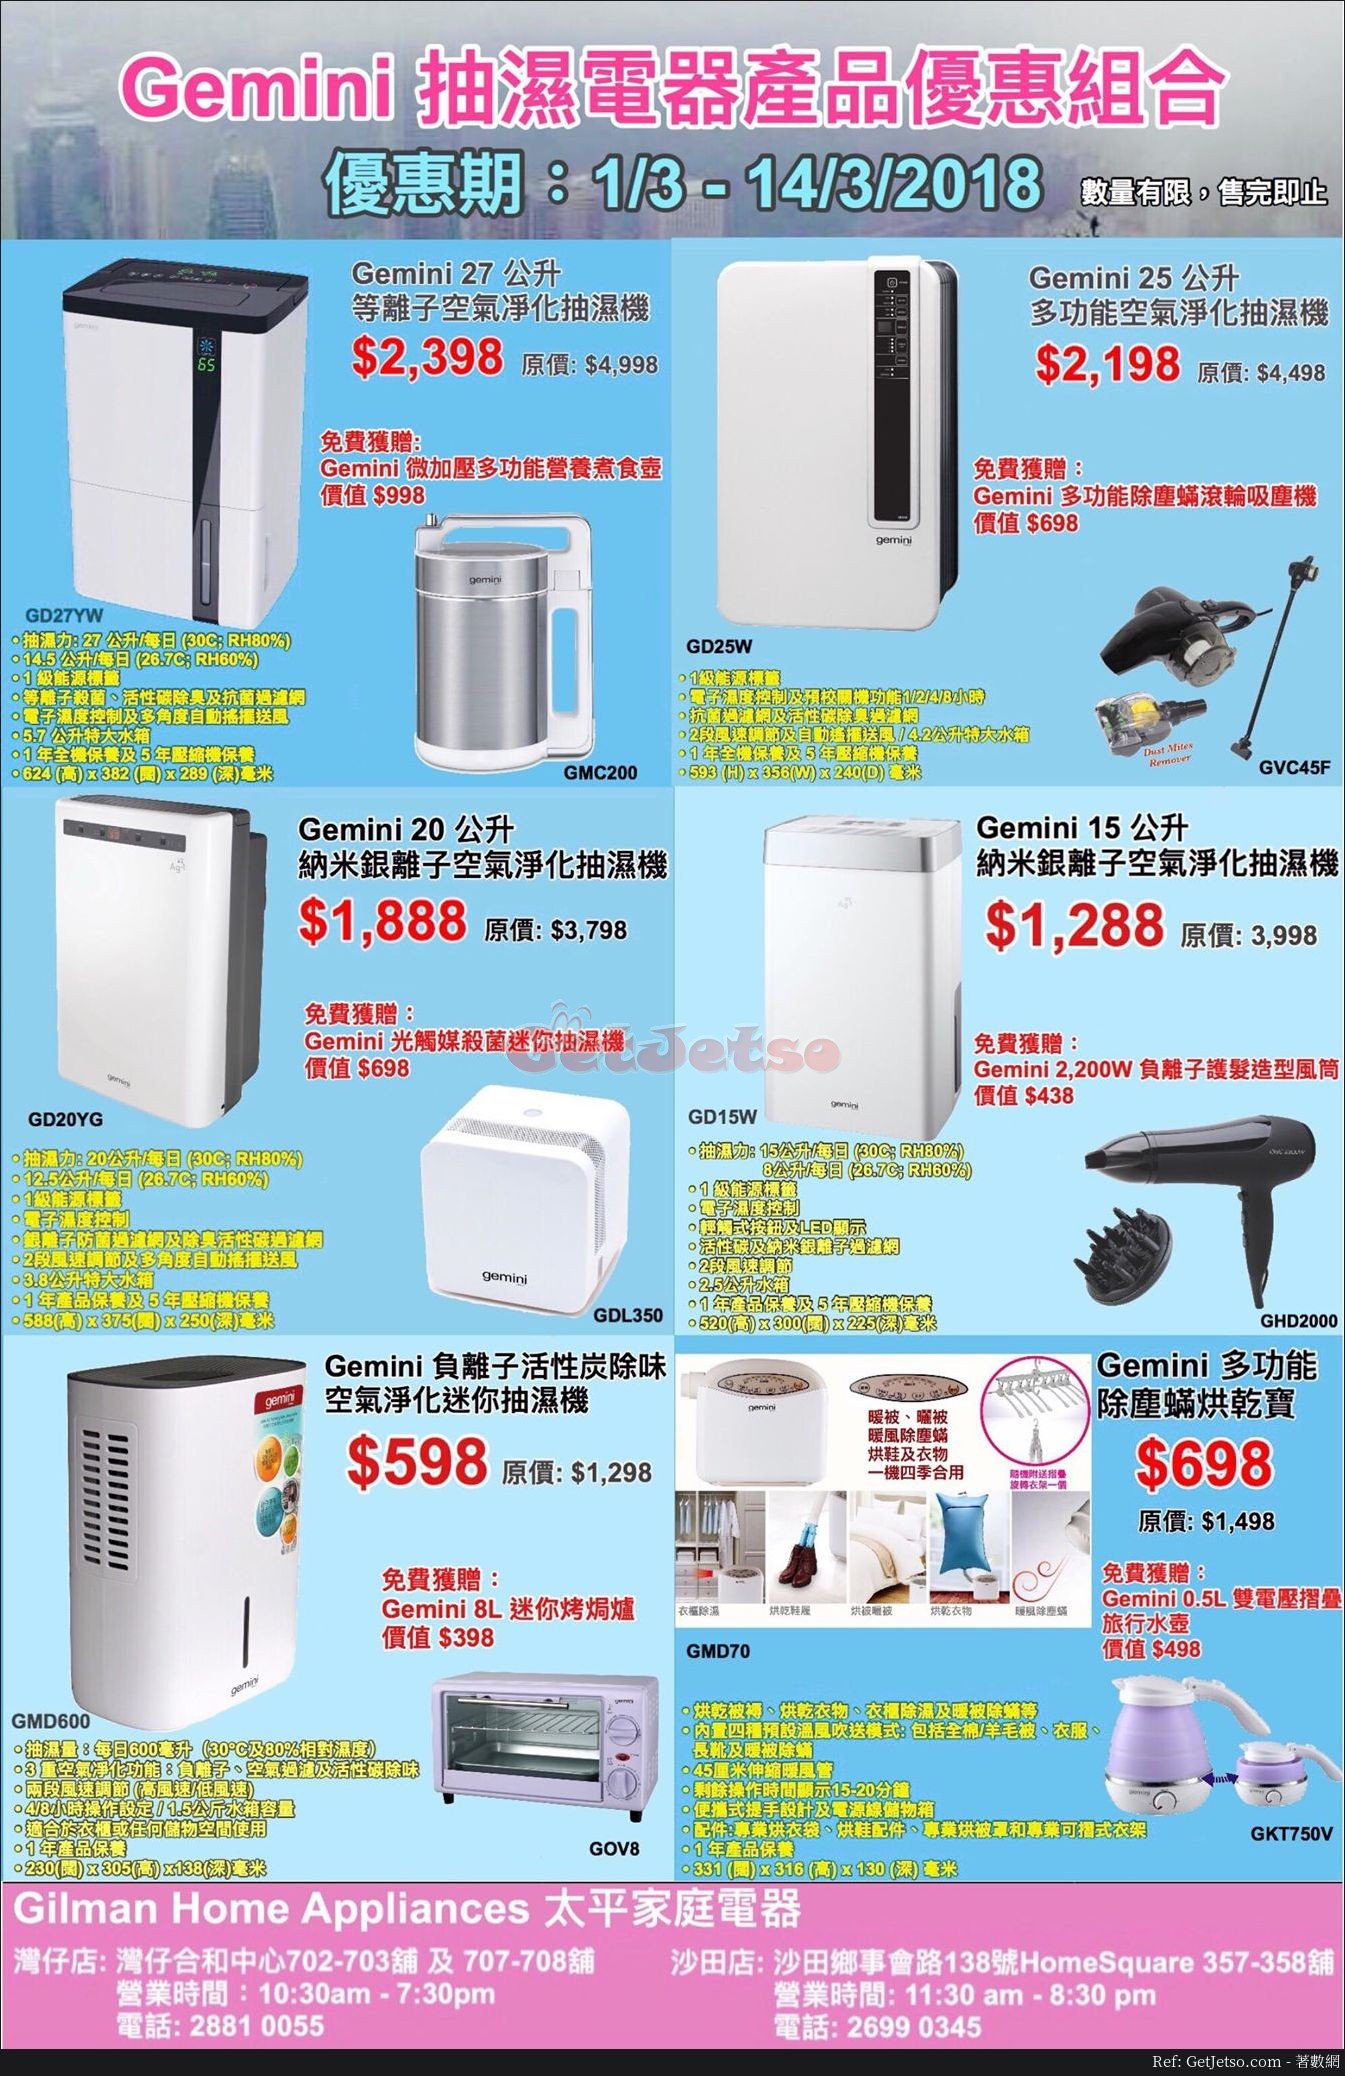 太平家庭電器低至5折抽濕防黴產品優惠(至18年3月14日)圖片1